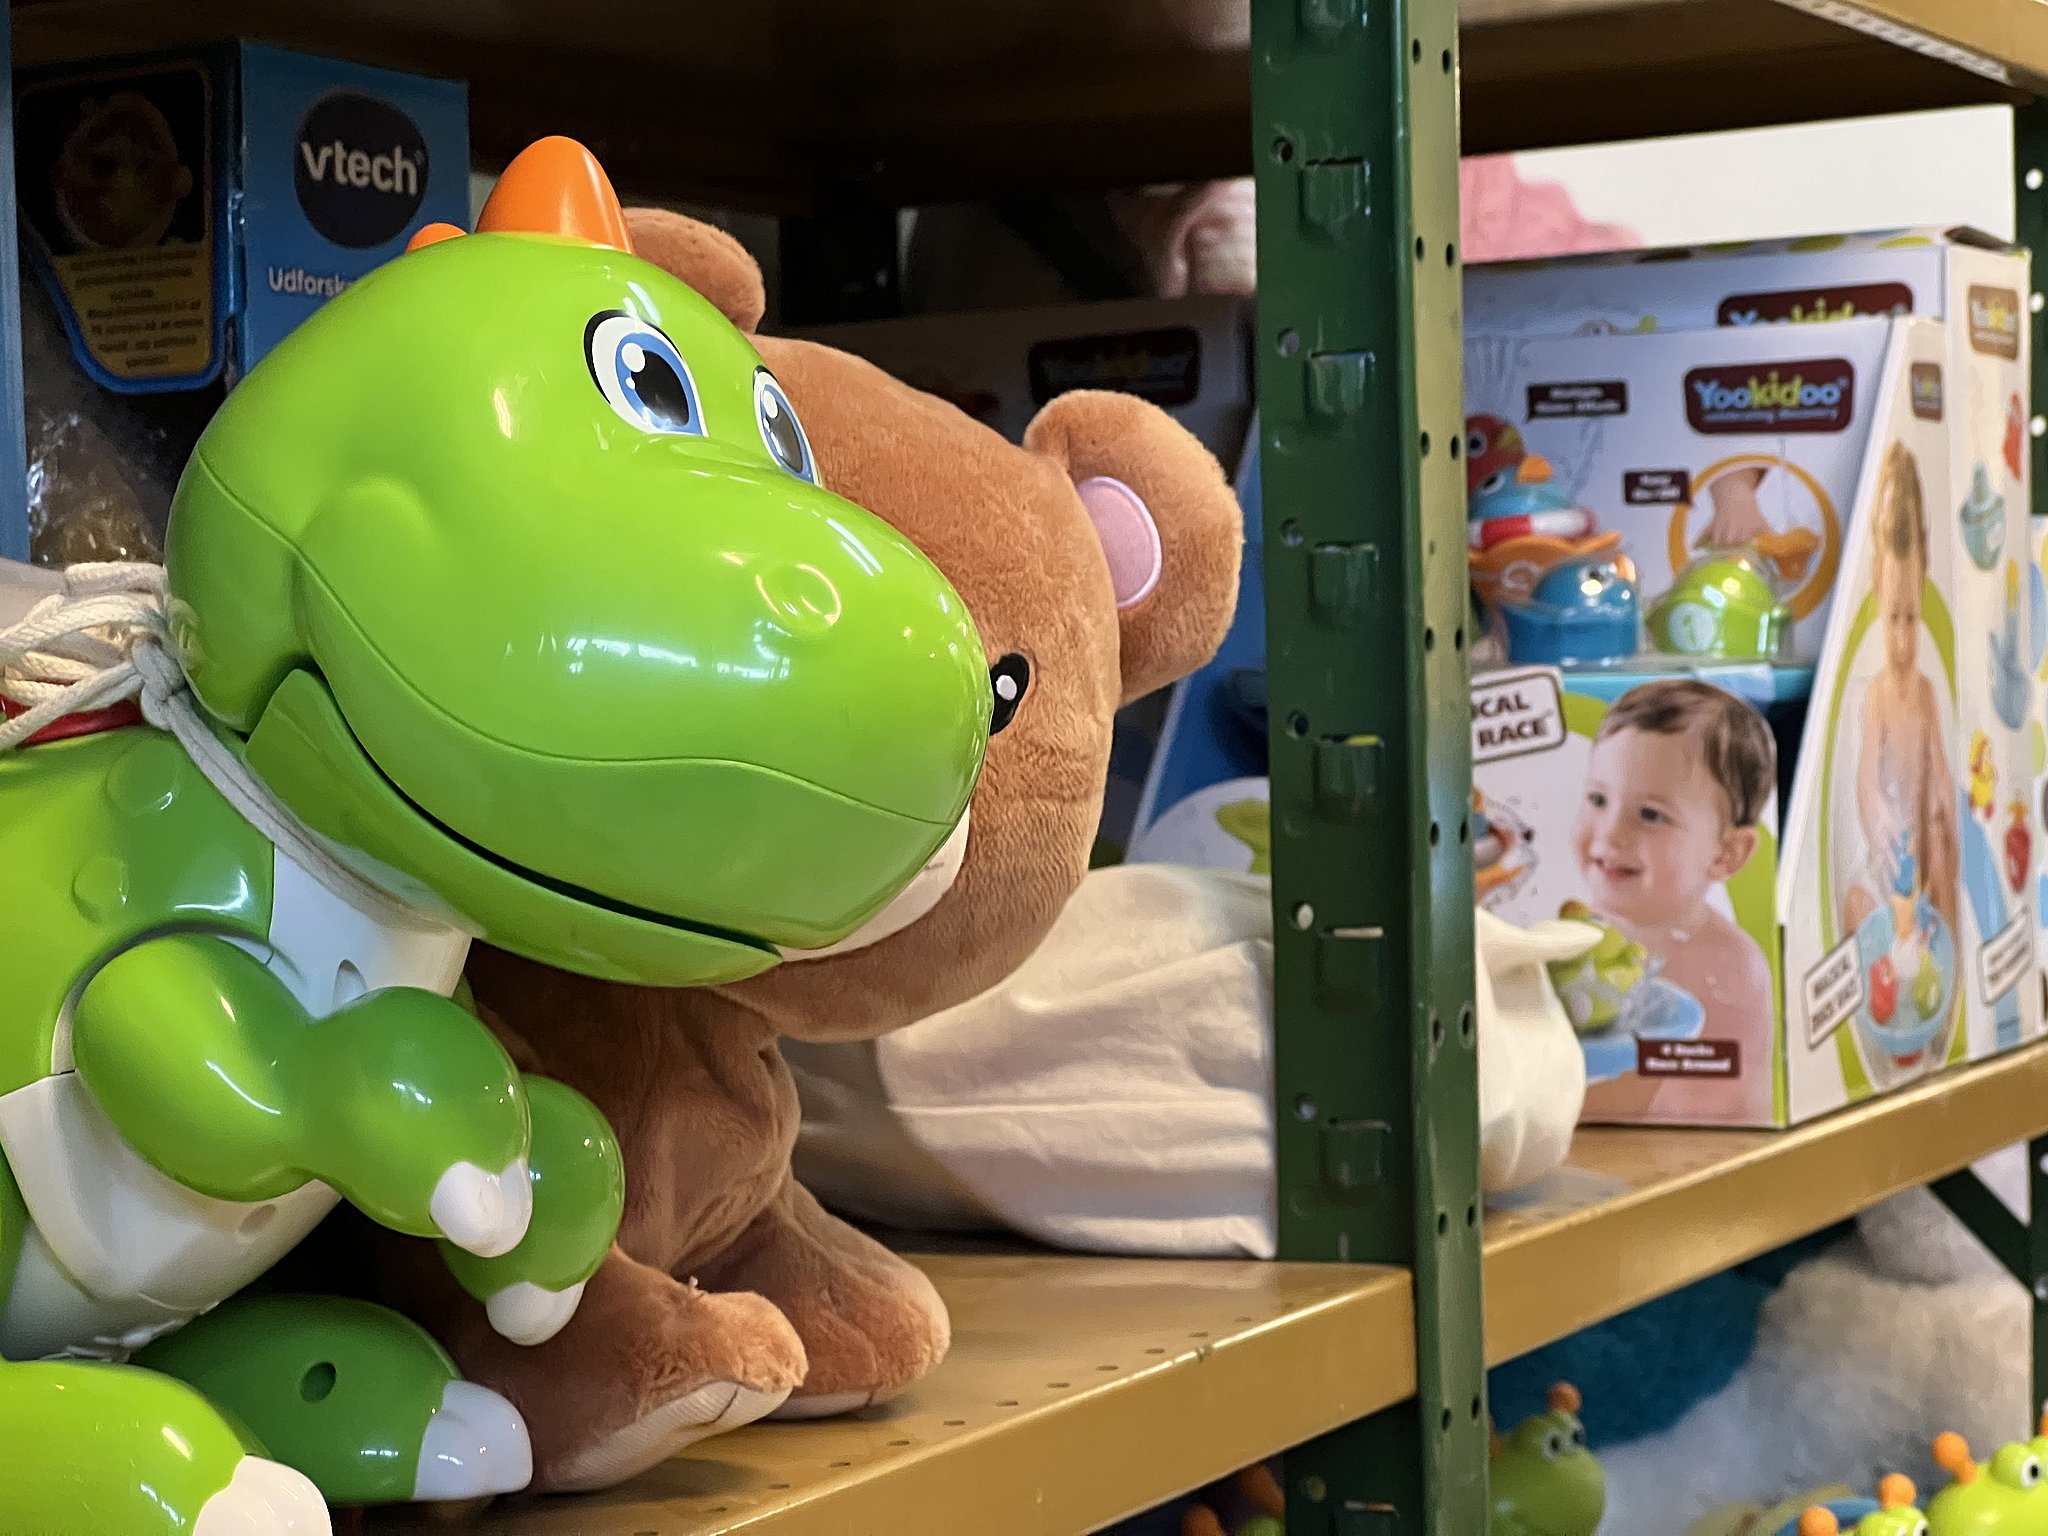 spin ørn Sympatisere Genbrugt legetøj hitter - firma har stor succes med abonnement | TV2  Østjylland